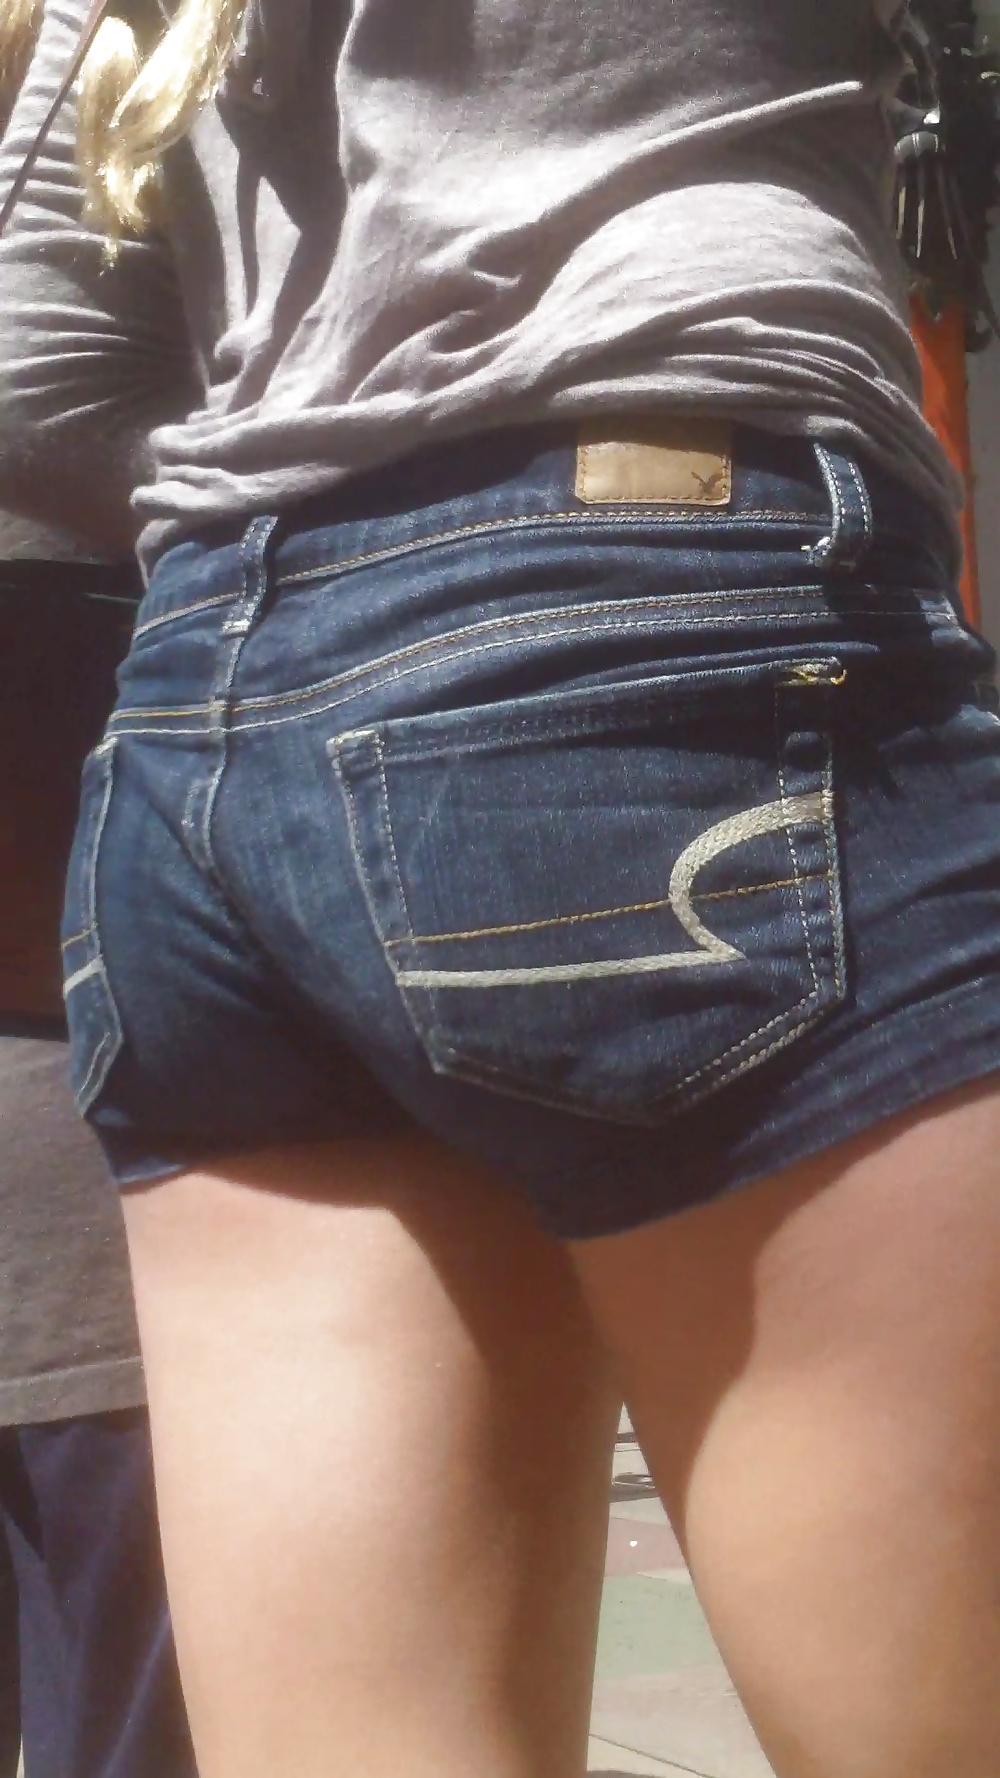 Popular teen girls ass & butt in jeans part 3 #25399041